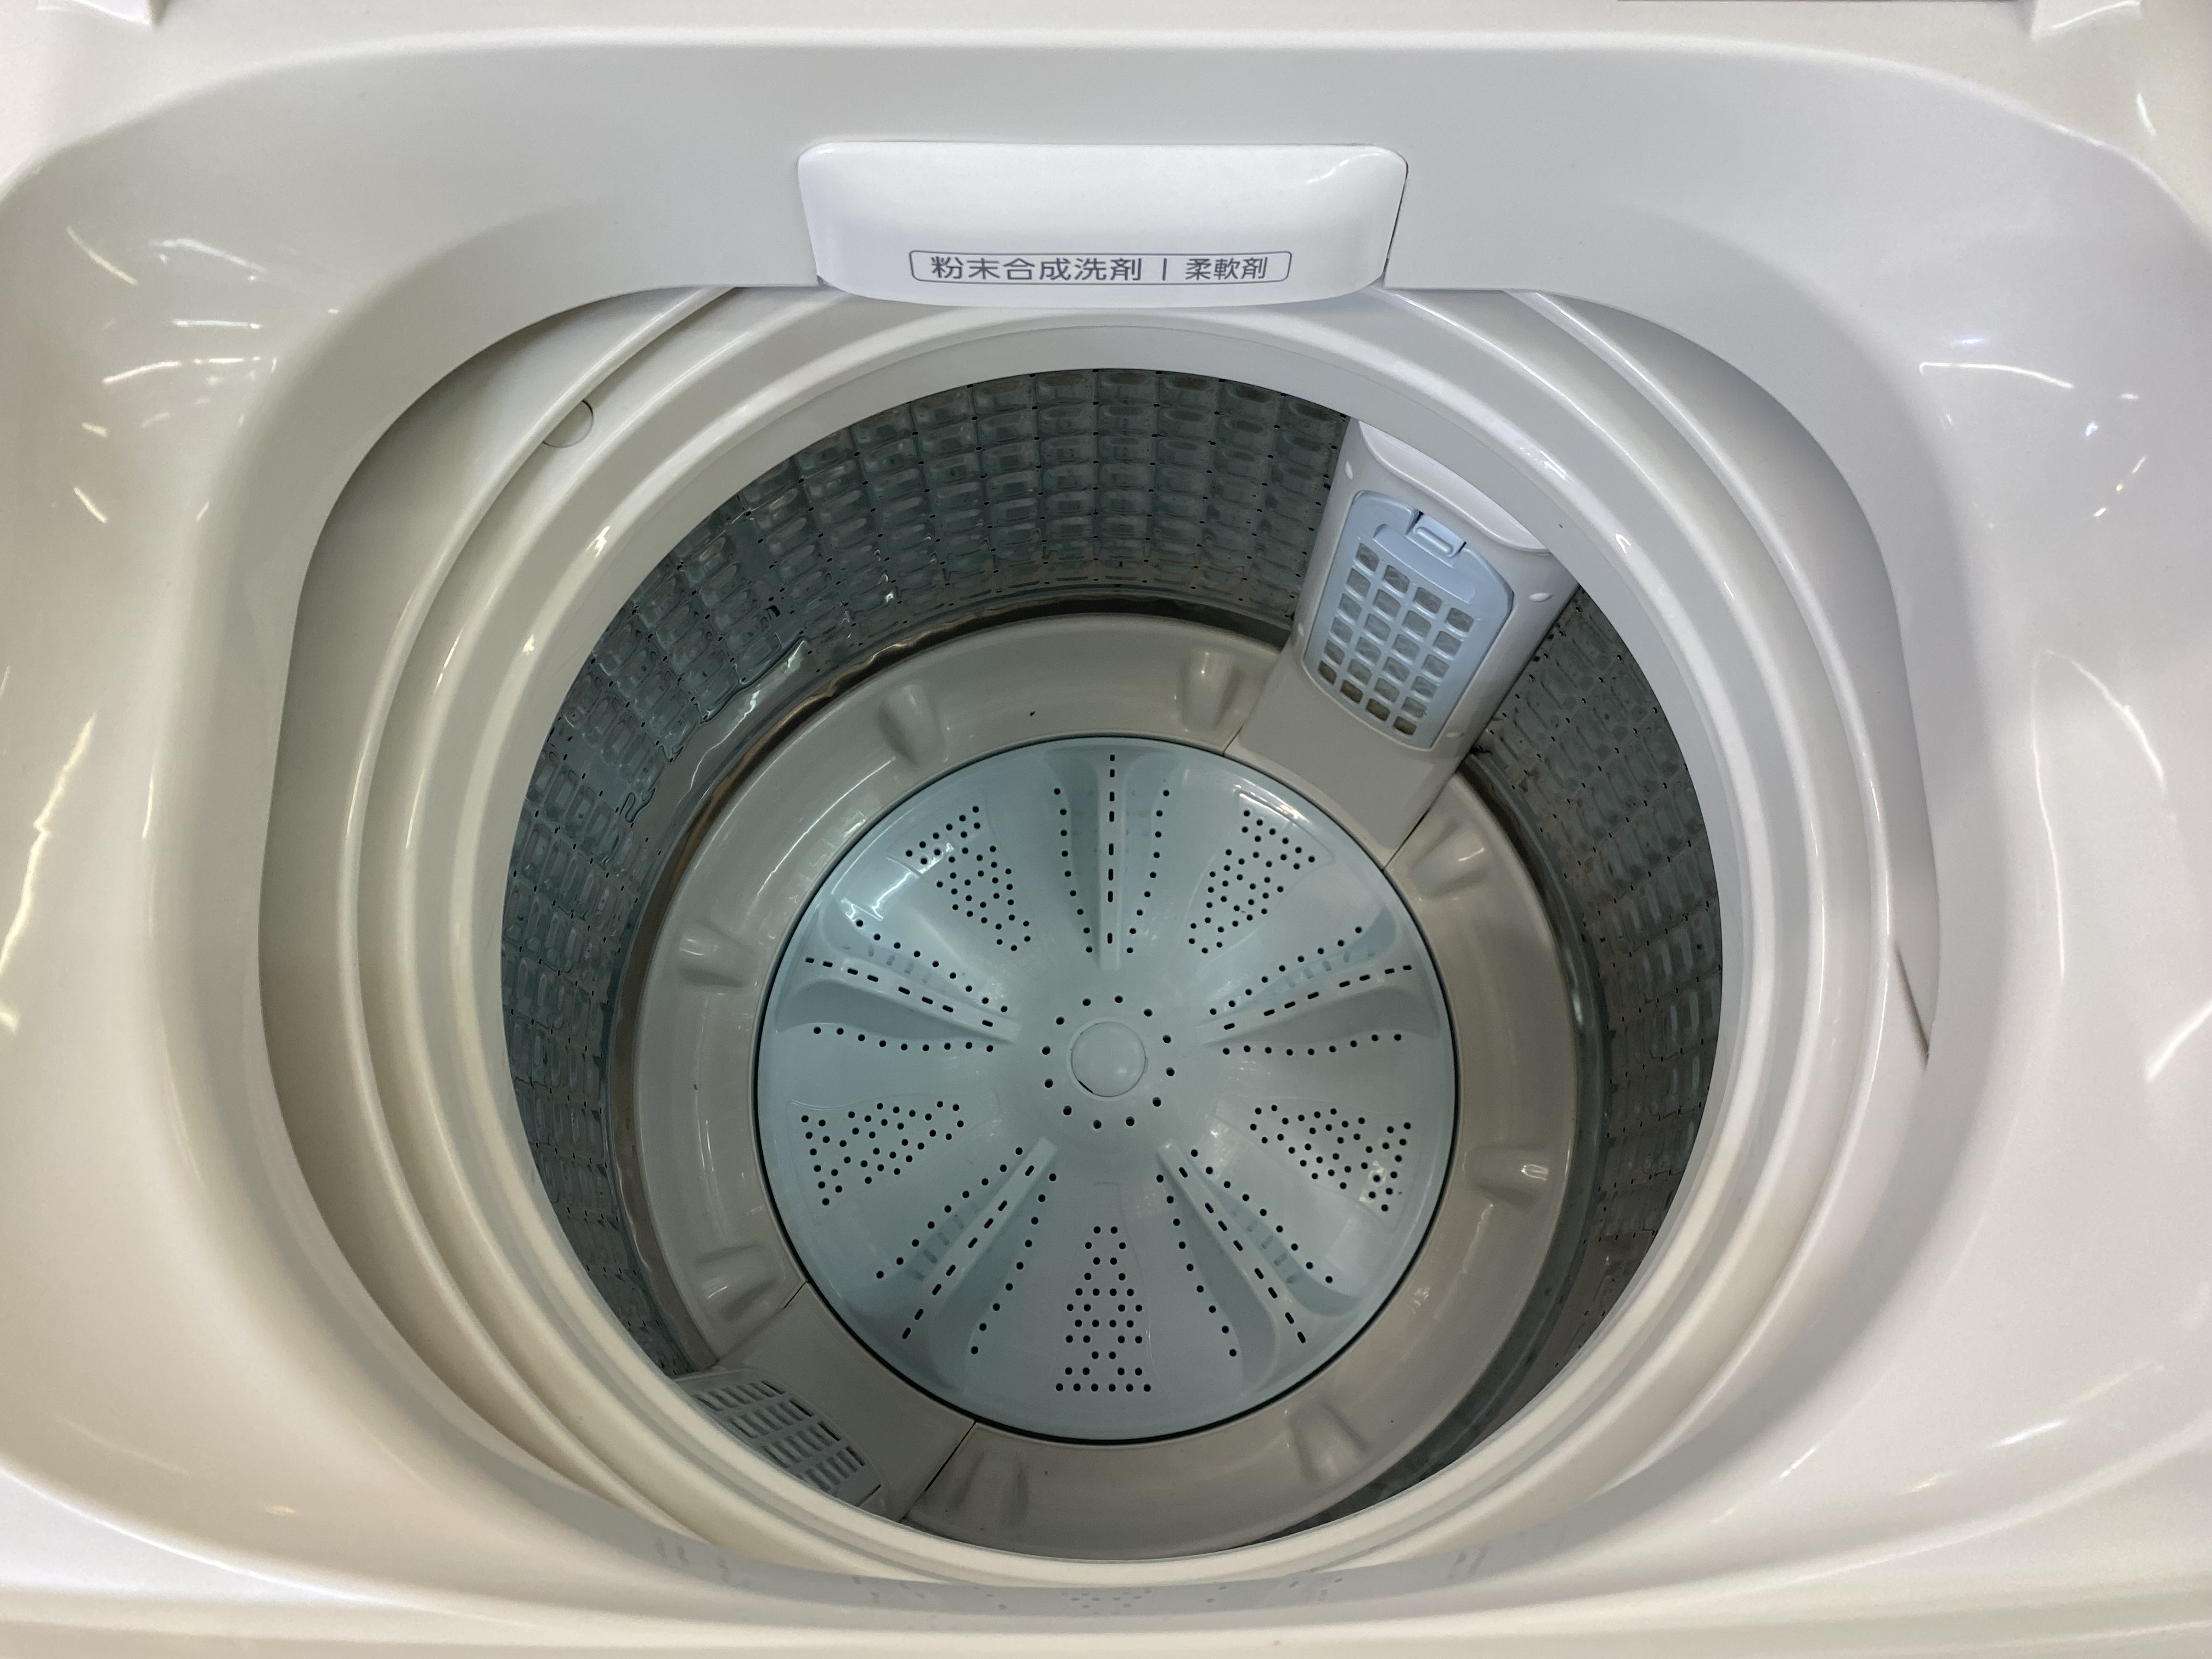 AQUA019年製7.0㎏全自動洗濯機AQW-GV70G 買取致しました。愛品館八千代 